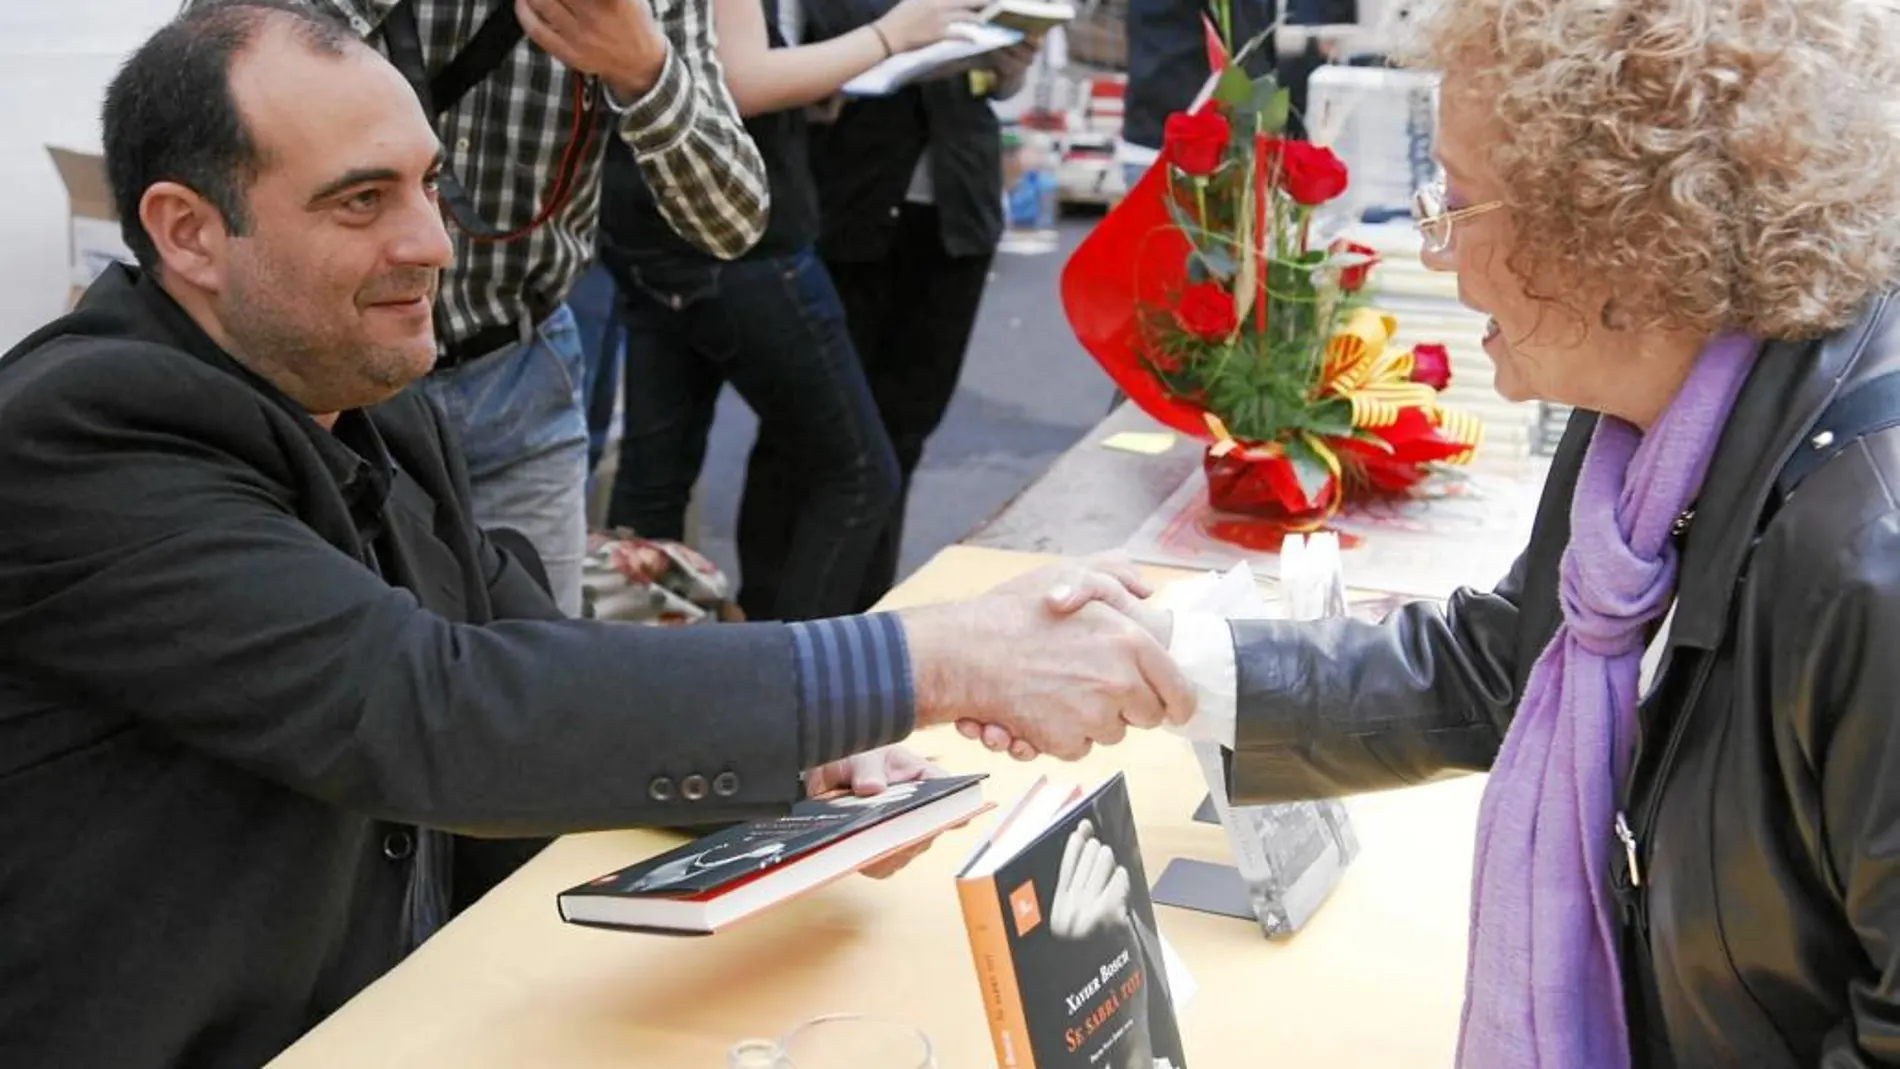 Xavier Bosch es uno de los autores más queridos el día de Sant Jordi